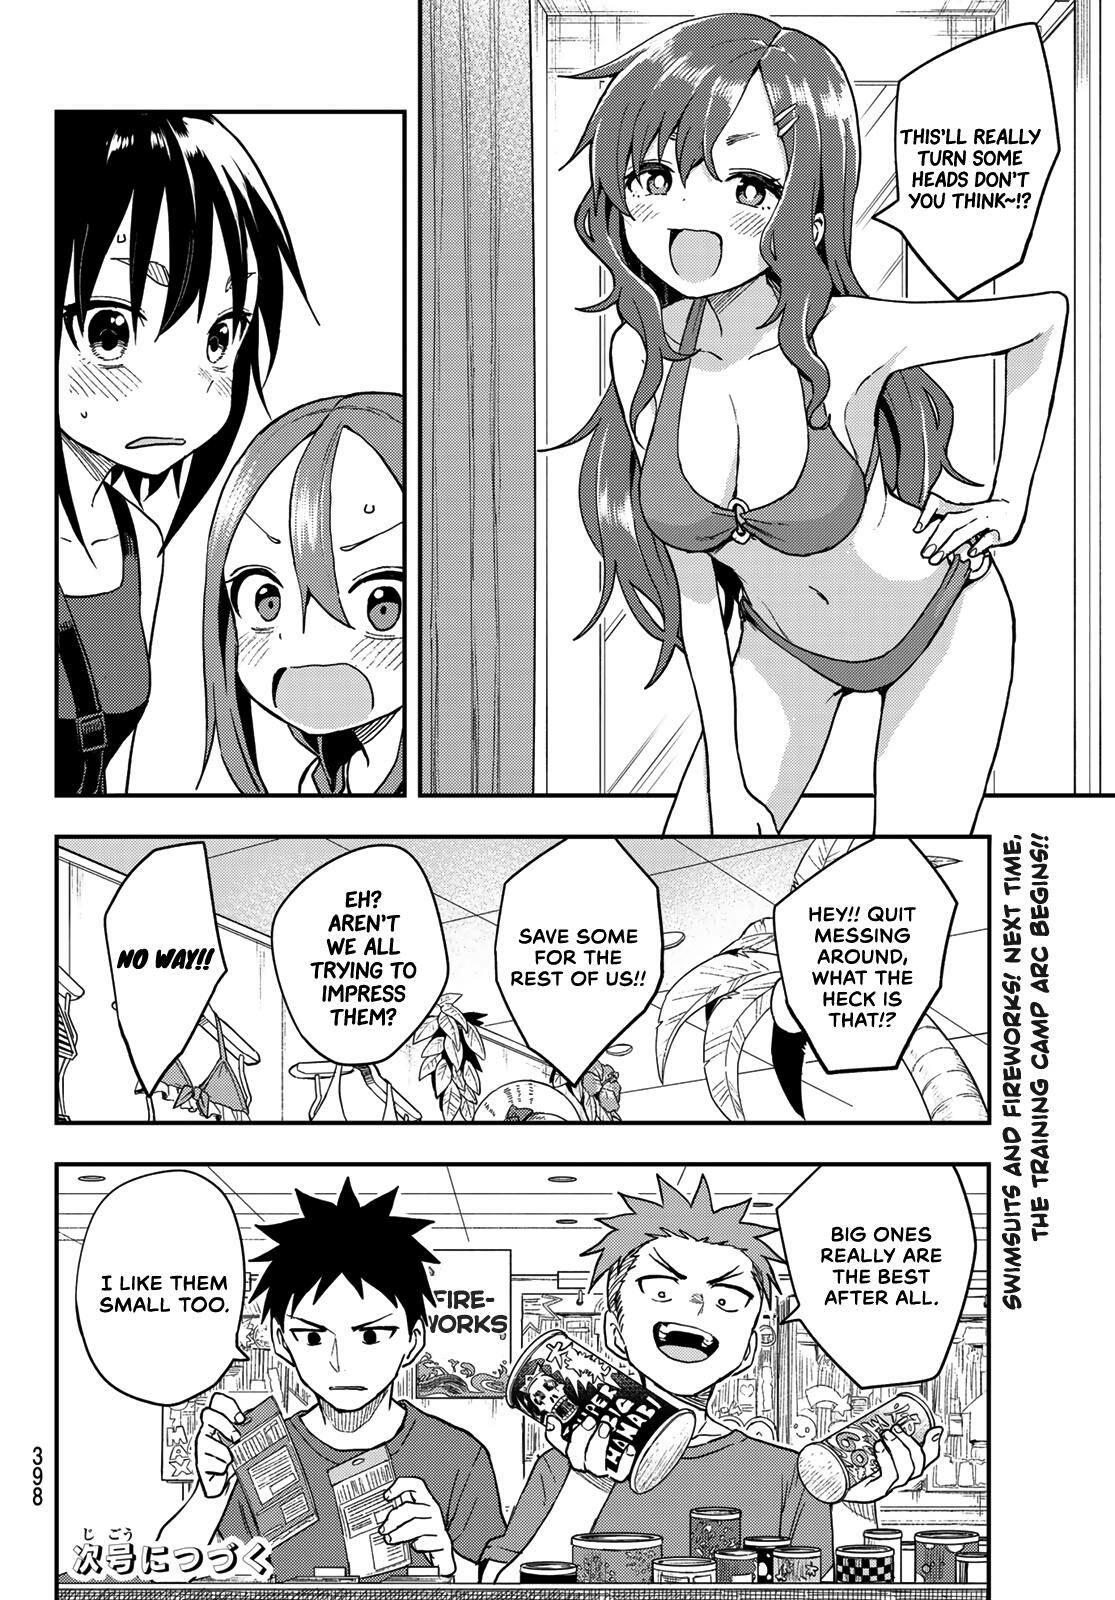 Read Soredemo Ayumu wa Yosetekuru Manga Chapter 135.5 in English